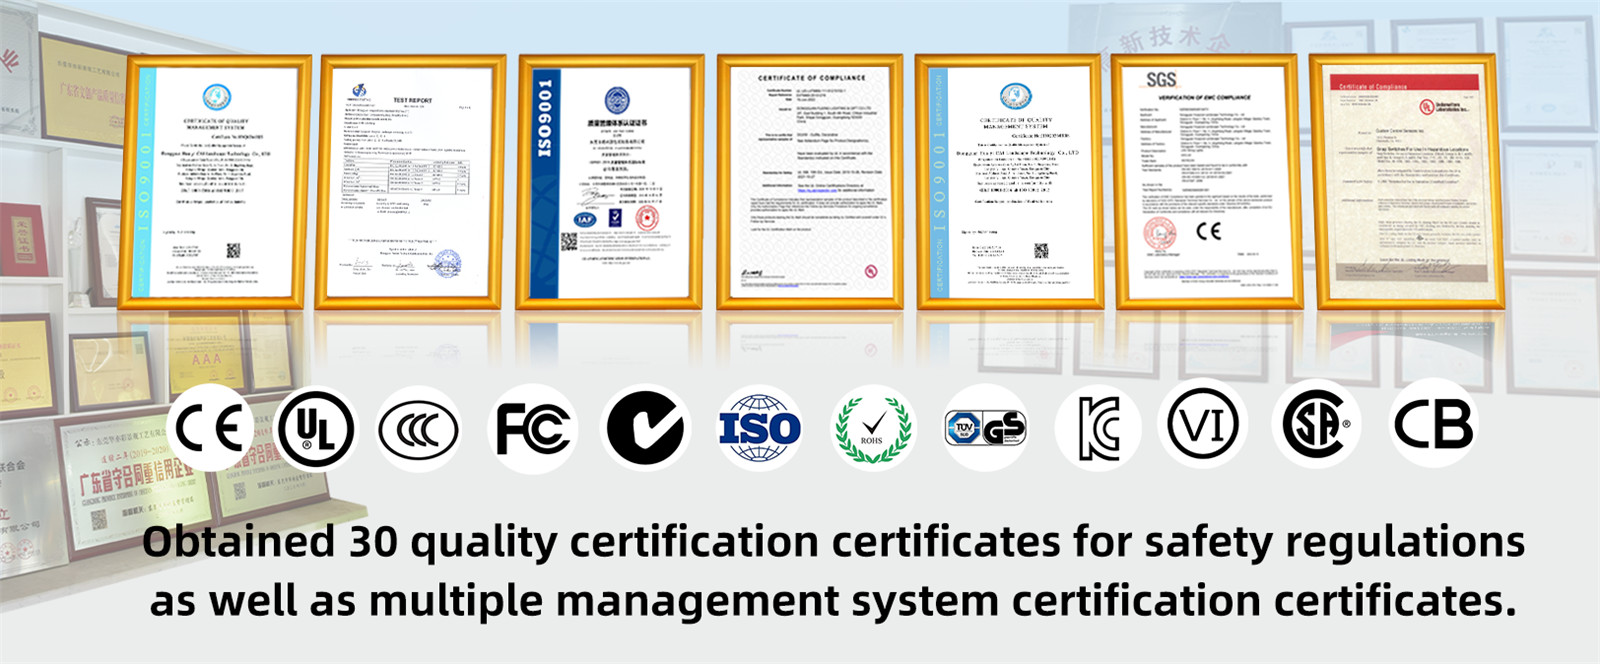 Erlangung von 30 Qualitätszertifizierungszertifikaten für Sicherheitsvorschriften sowie mehrerer Zertifizierungszertifikate für Managementsysteme.